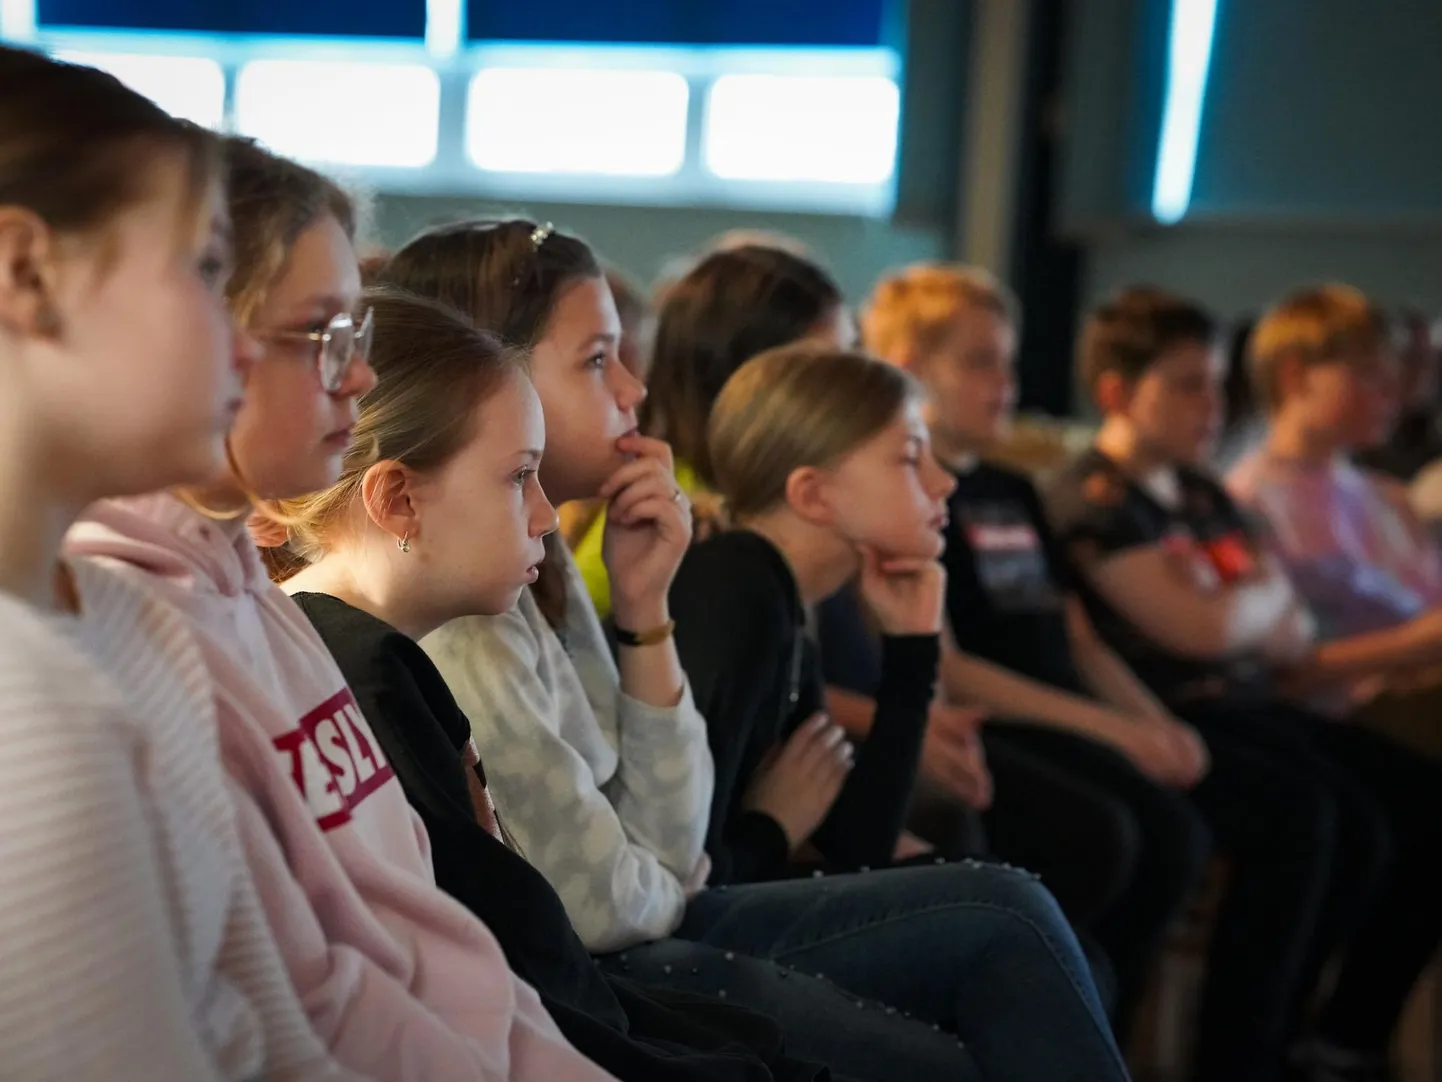 Pärimusmuusika keskus annab muu haridustegevuse seas koolikontserte. Pildil hetk Rakvere reaalkooli kontserdist.